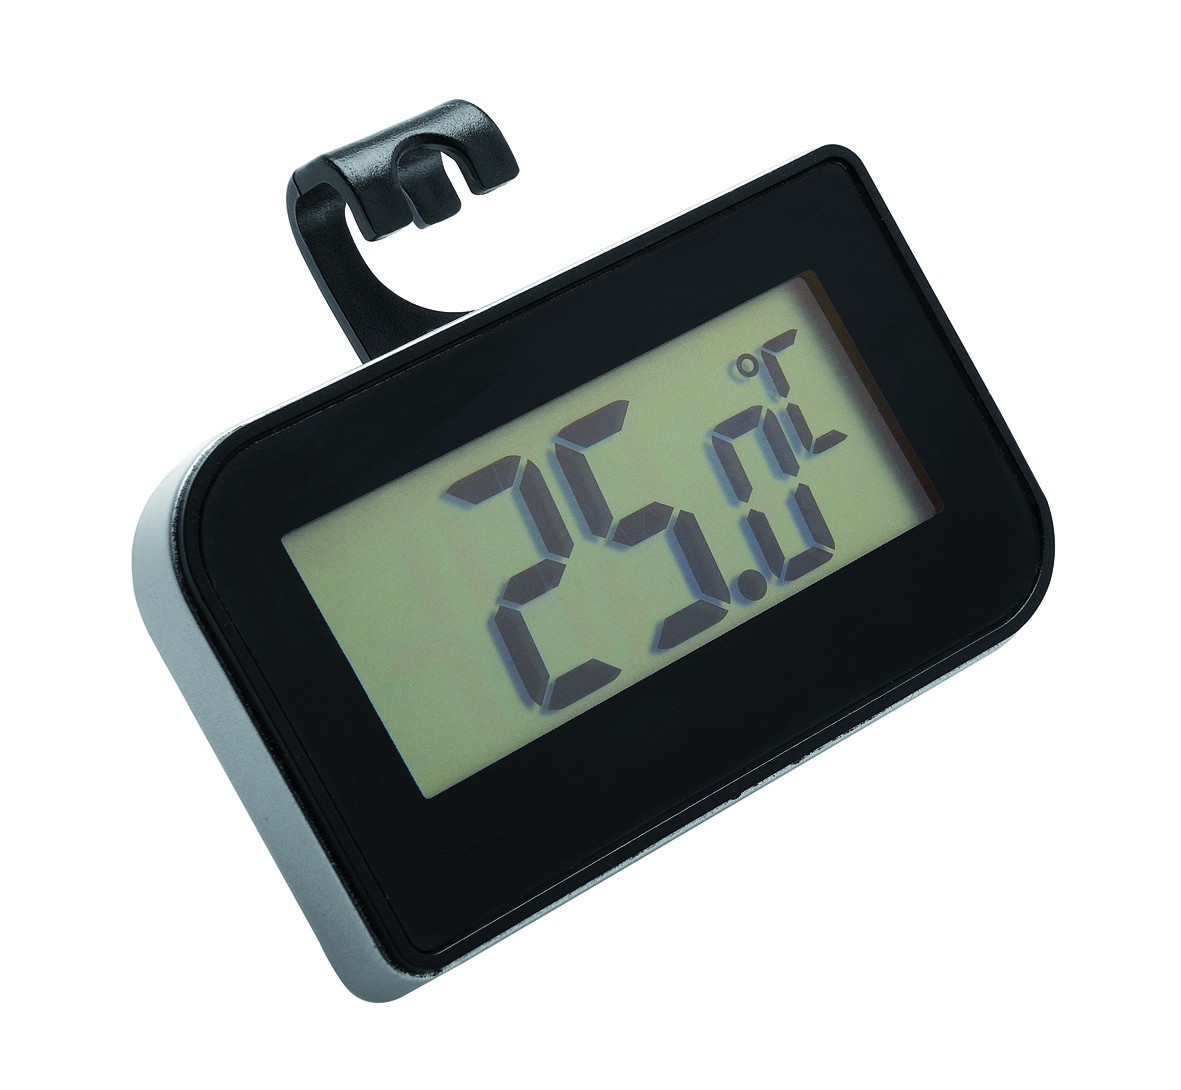 Thermomètre digital pour frigo